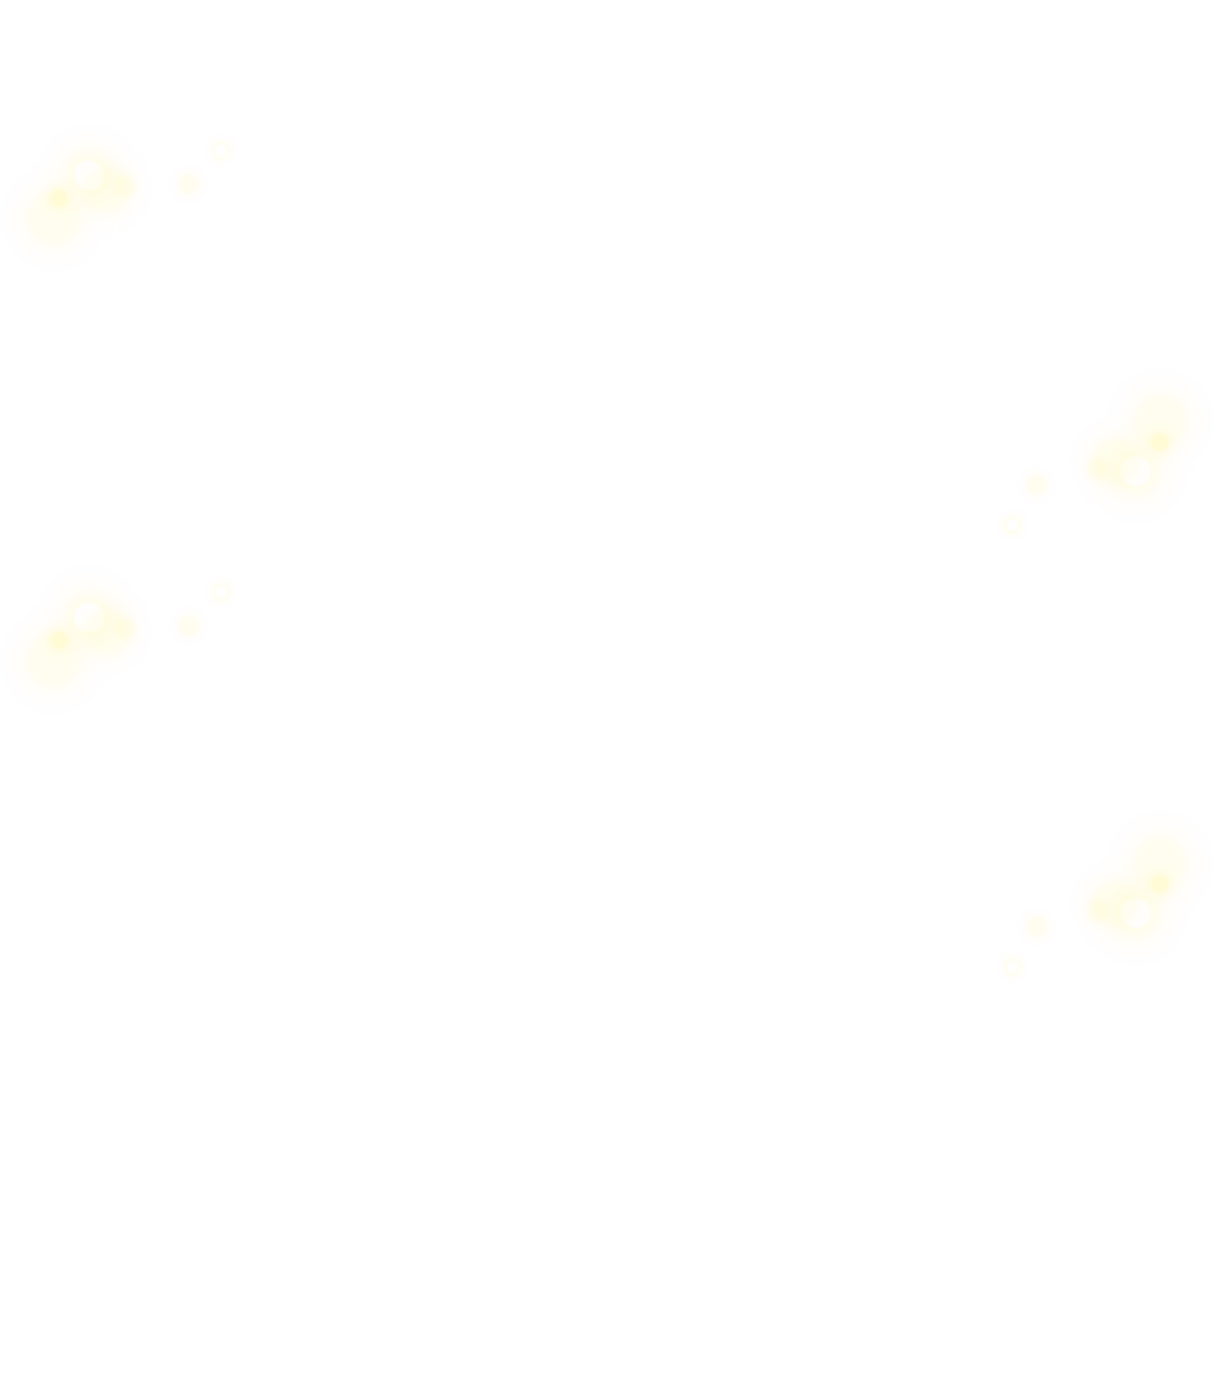 2019年に好評を博したコンサートツアー「WORLD MUSICAL」の第2弾。11月21日に東京・Bunkamura オーチャードホールにて開催したコンサートの模様を独占放送！そして今回、LE VELVETSがロケに初挑戦。青春時代を過ごした校舎や、学生時代に通っていた思い出の場所などメンバーゆかりの地をご紹介します。さらに懐かしの味や、当時を知っている方との再会もありコンサートでは見せない素顔をお届けします。 【出演】 LE VELVETS（ル ヴェルヴェッツ）宮原浩暢（Baritone）、日野真一郎（Tenor）、佐藤隆紀（Tenor）※佐賀龍彦は病気療養中のため、本公演は出演致しません。